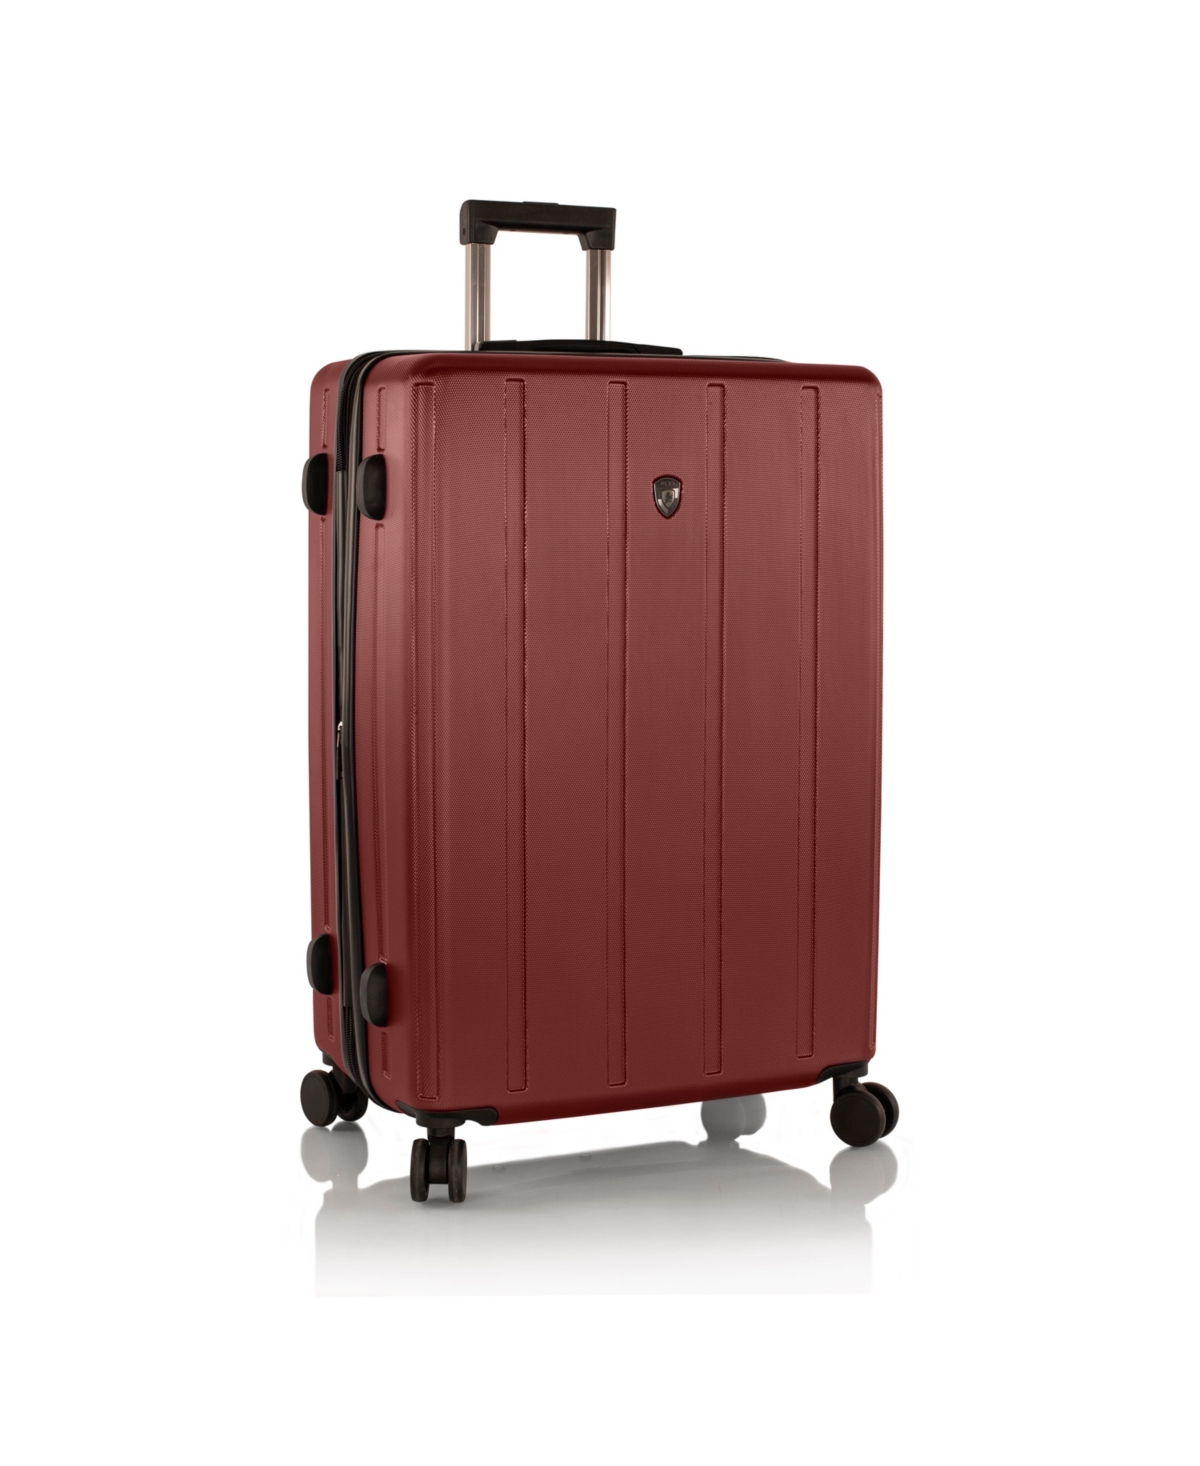 Heys Spinlite 21" Hardside Carry-on Spinner Luggage In Burgundy